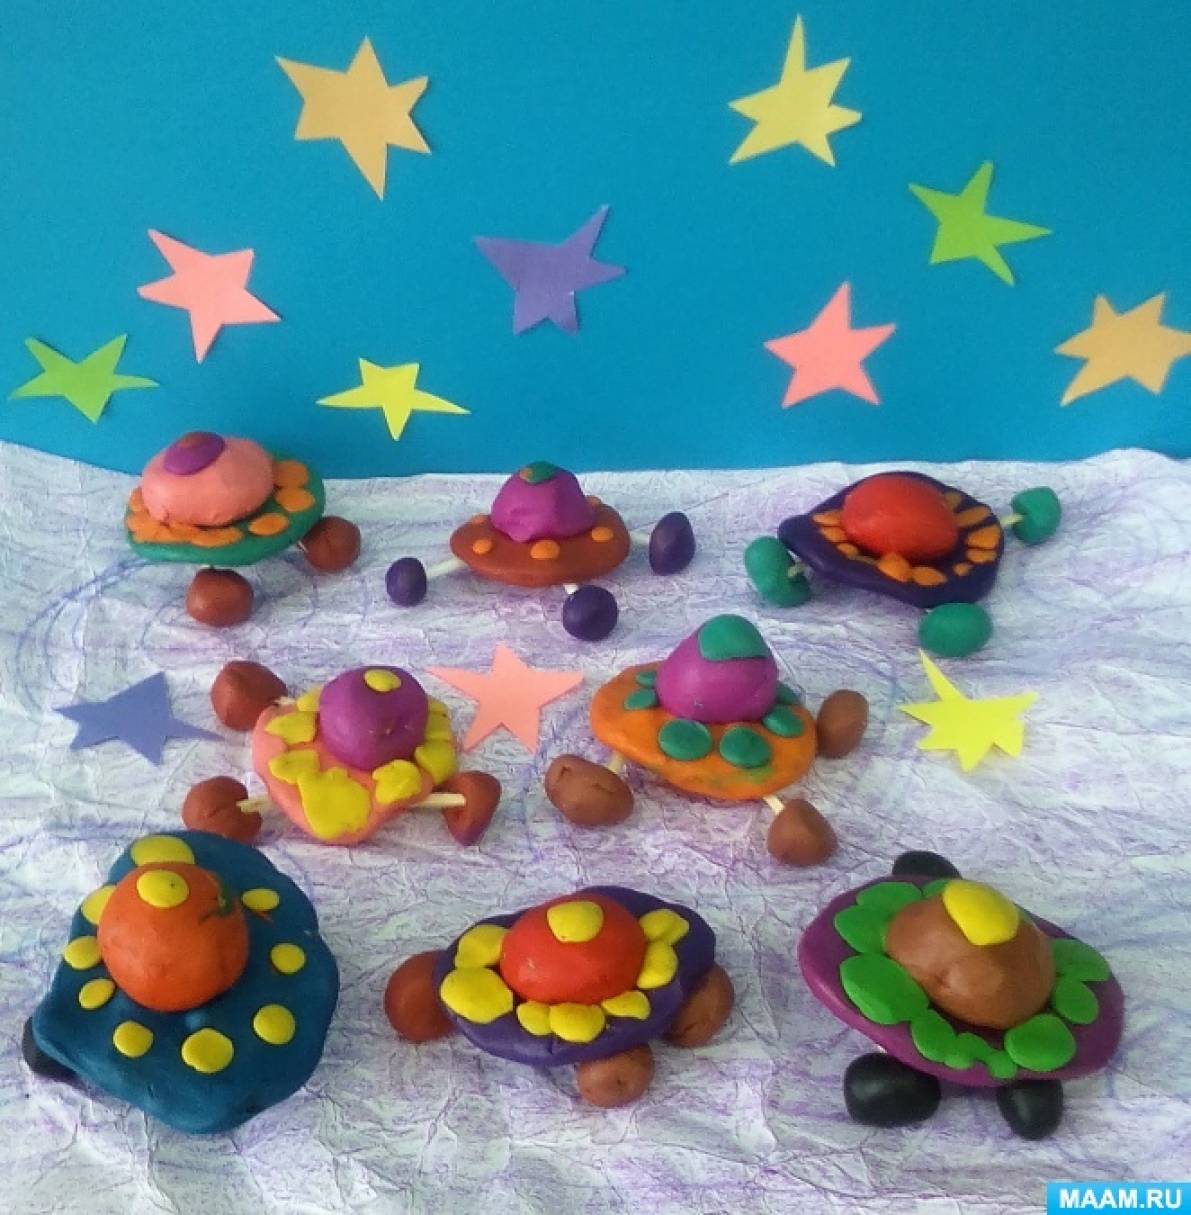 Конспект НОД по лепке «Летающая тарелка» для младшего дошкольного возраста ко Дню космических пришельцев на МAAM